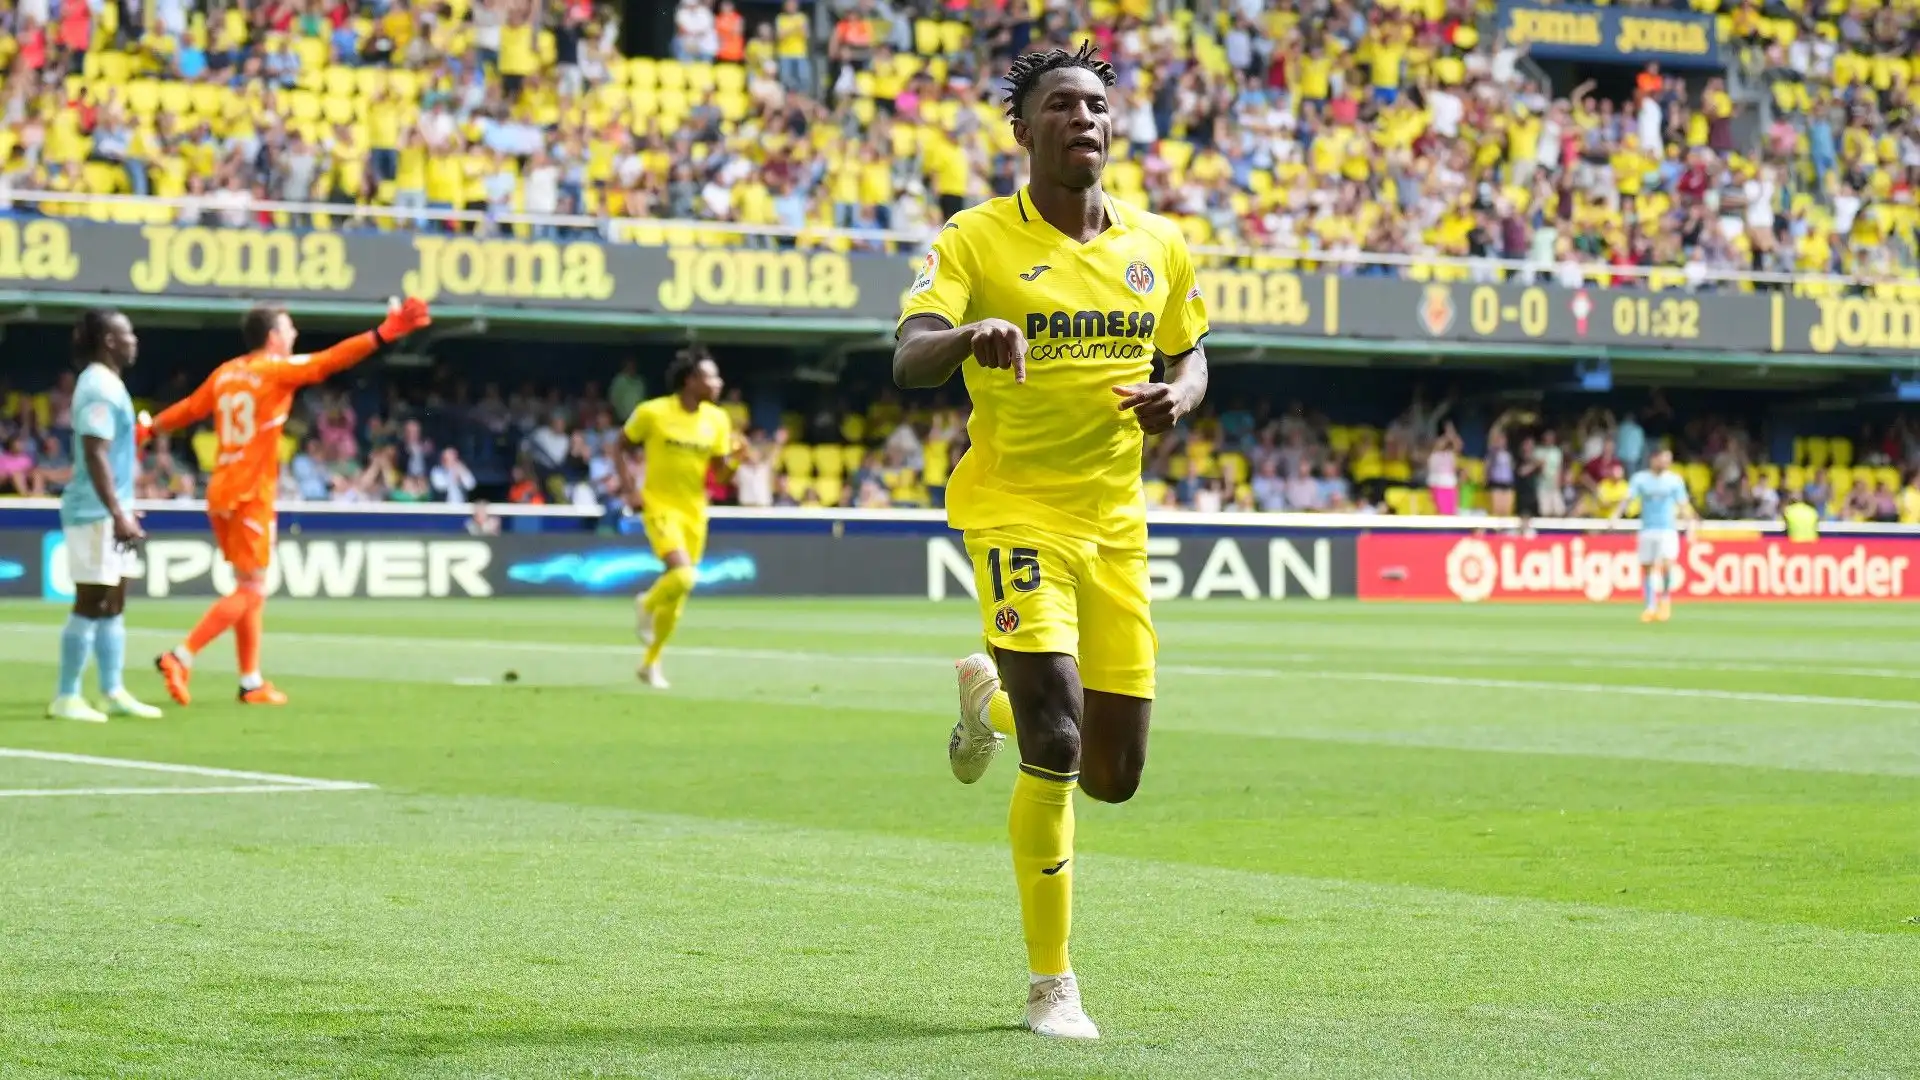 Il giovane attaccante ha un contratto con il Villarreal fino al 2026